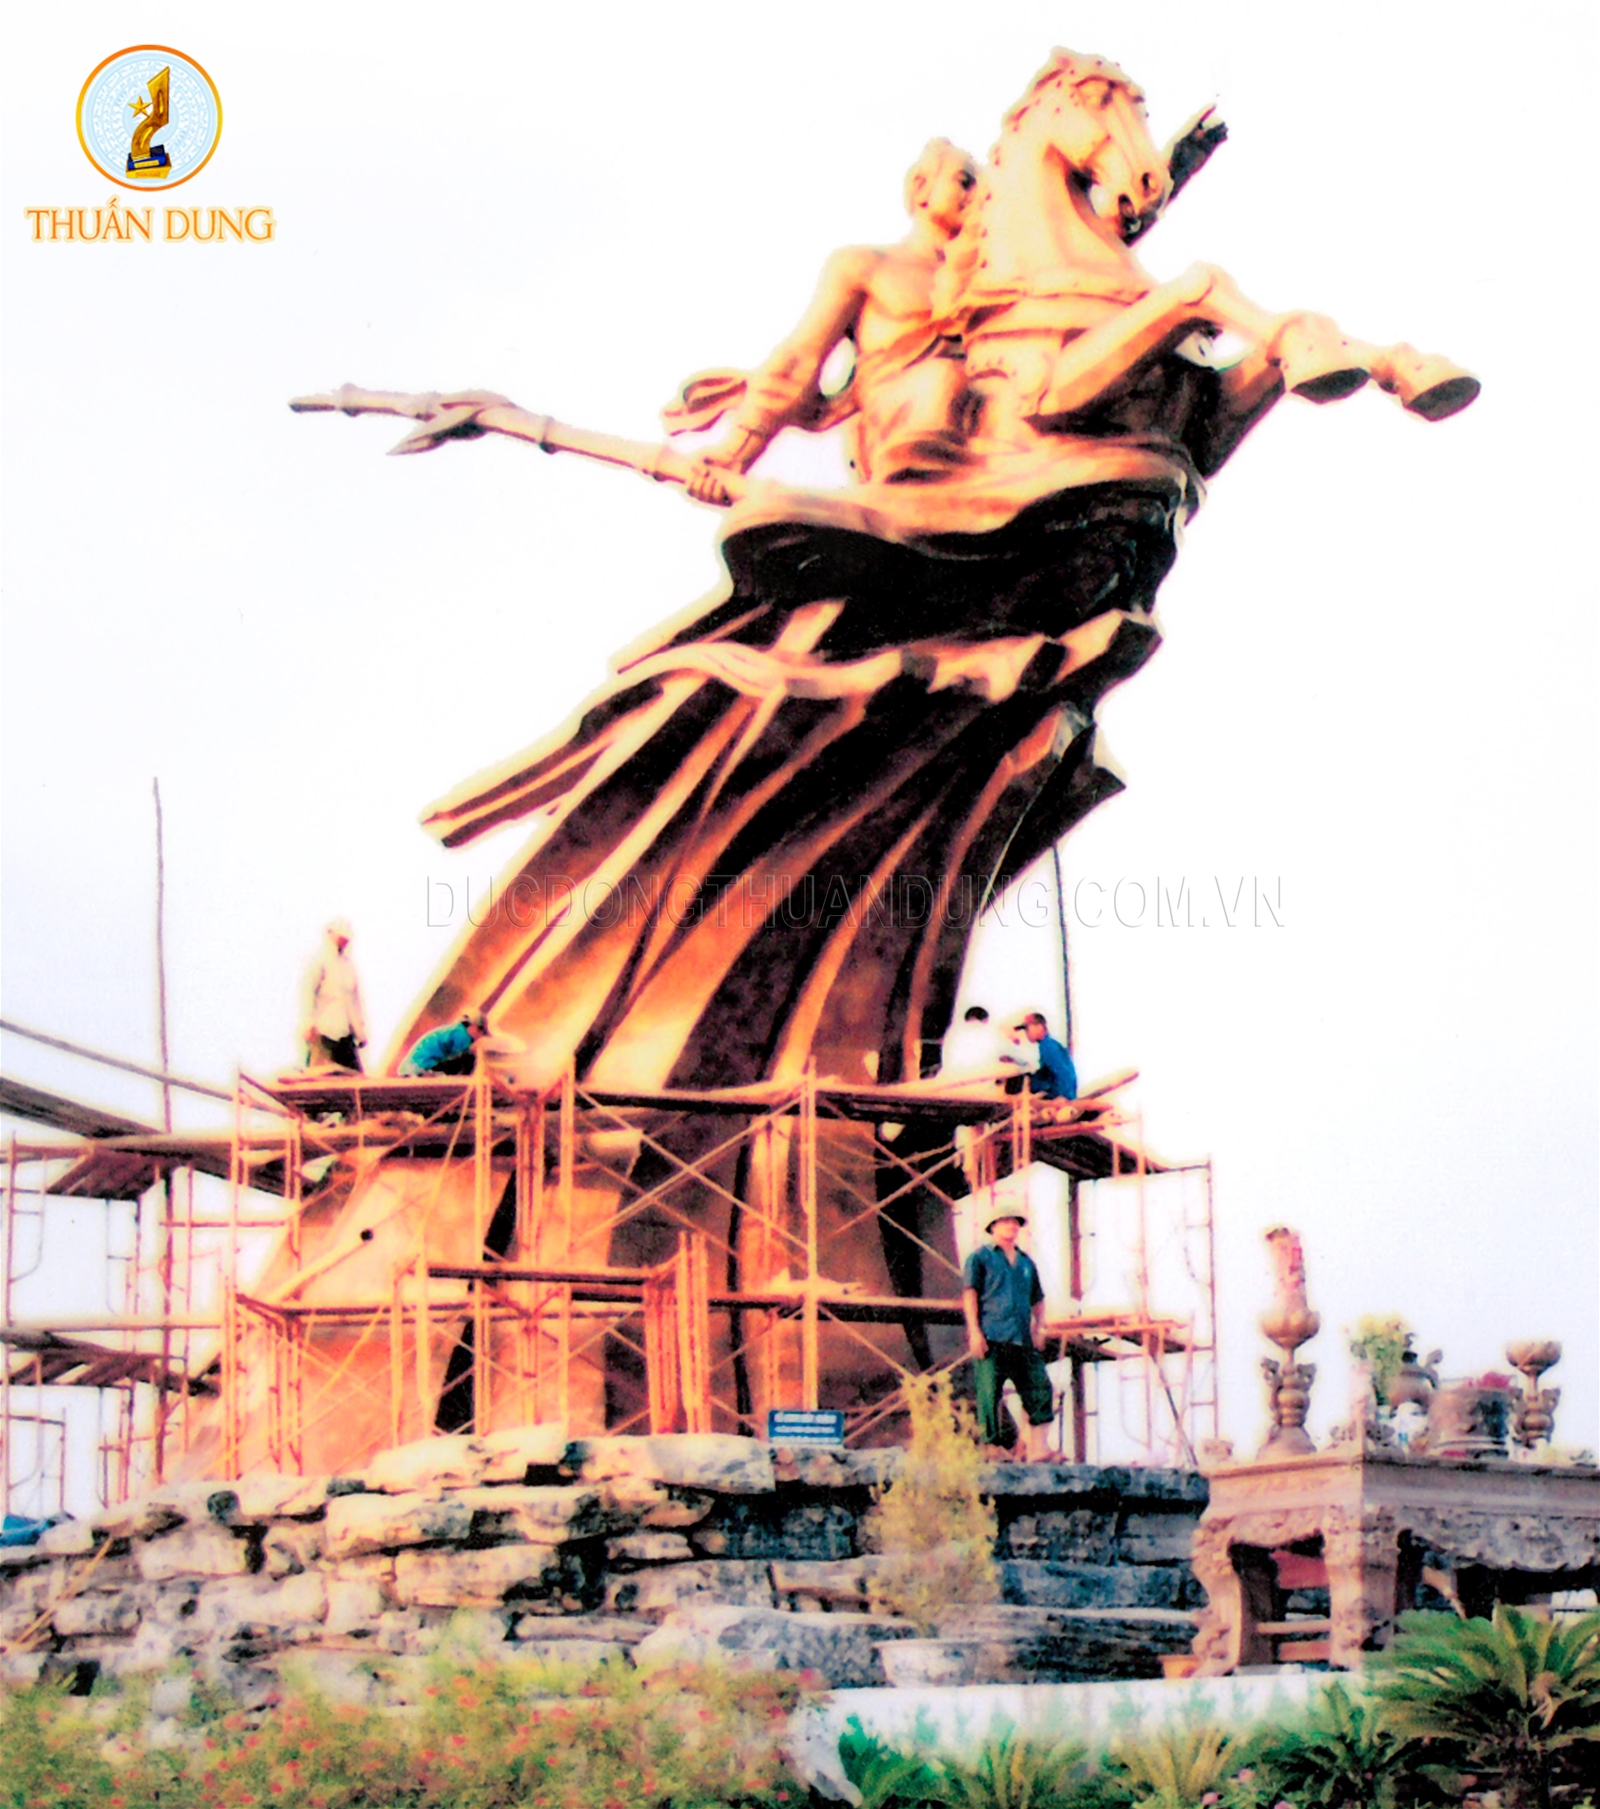 Ảnh: Giám đốc Vũ Duy Thuấn cùng anh em công nhân đang hoàn thiện  lắp đặt tượng Đài Thánh Gióng Tại Đỉnh núi Sóc Sơn - Hà Nội